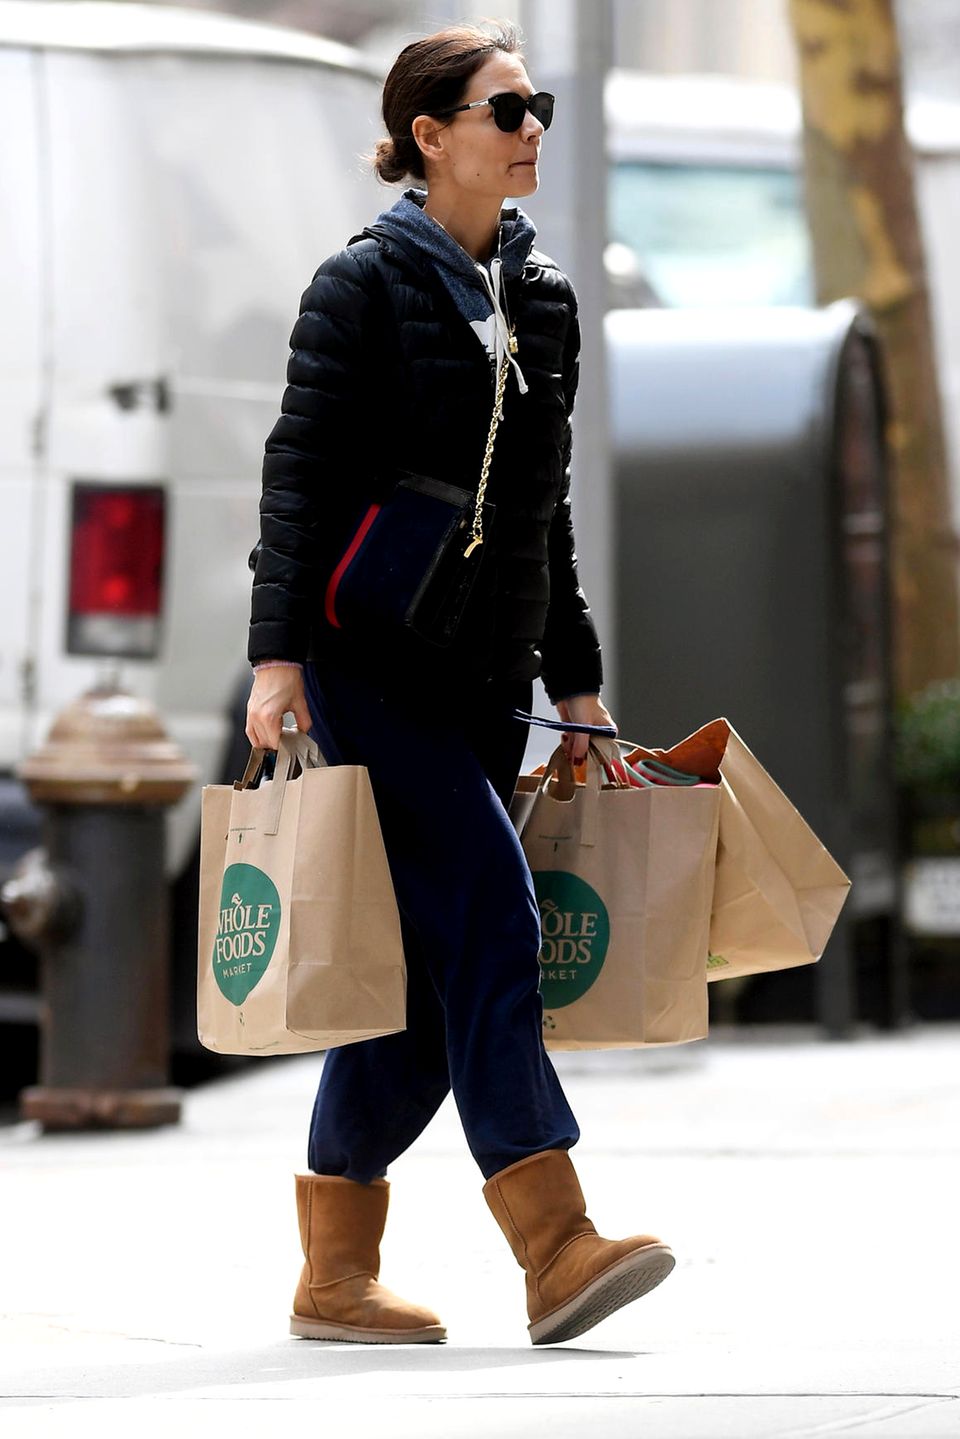 Nach den Gerüchten um ein mögliches Beziehungsaus mit Schauspieler Jamie Foxx wird scheinbar ordentlich eingekauft. In New York wird Katie Holmes beim Schleppen von gleich drei vollen Einkaufstüten gesichtet.